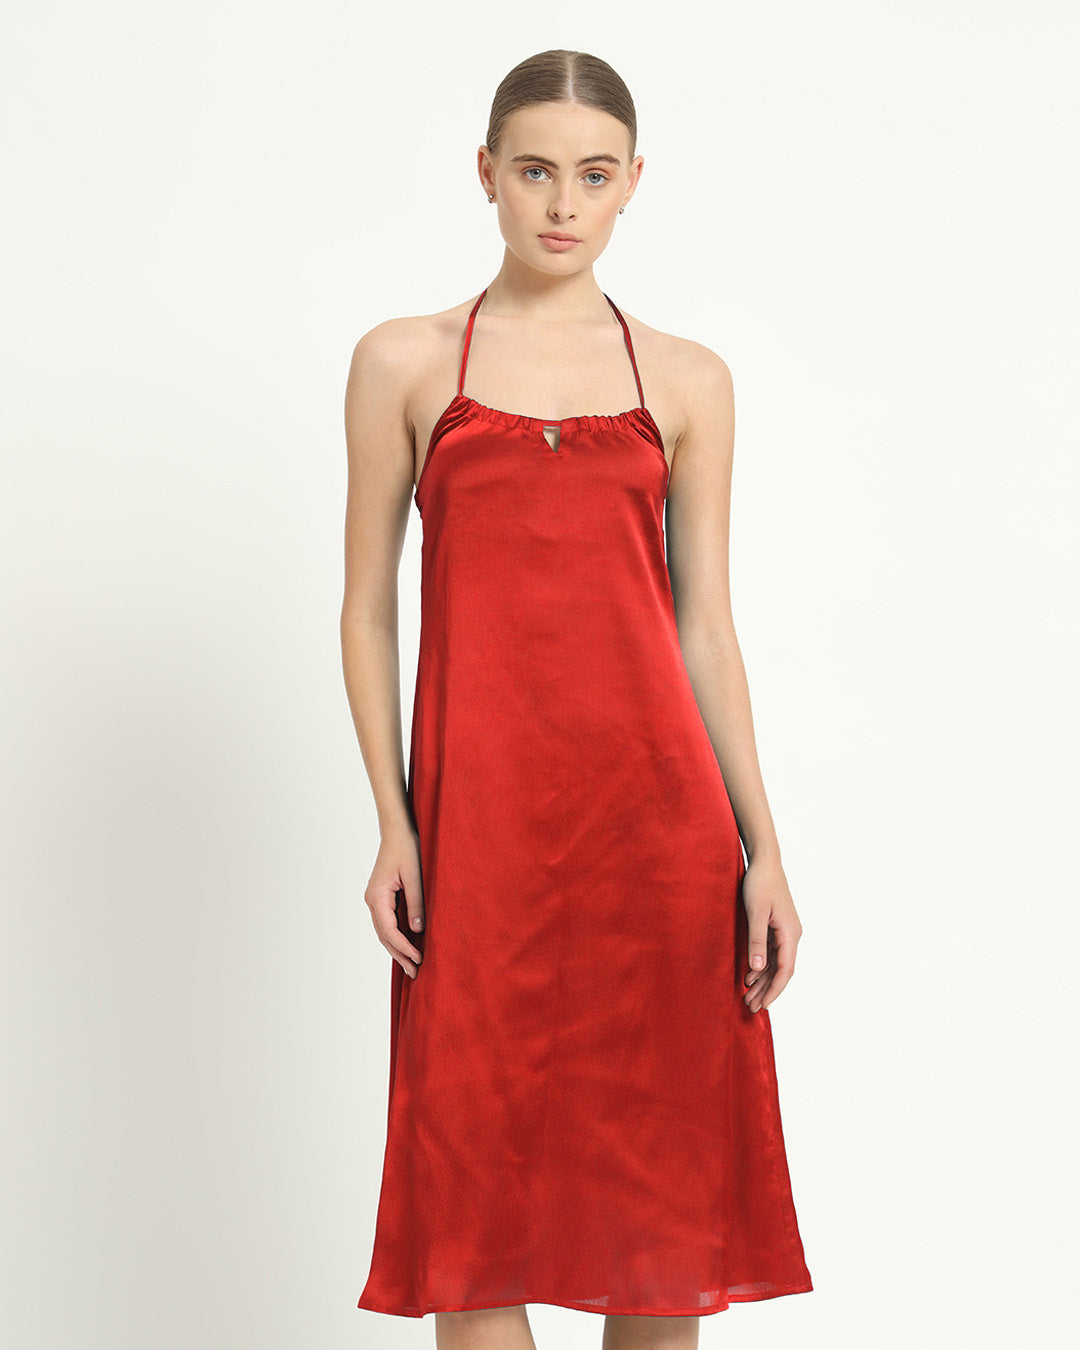 Satin Halter Neck Scarlet Red Dress